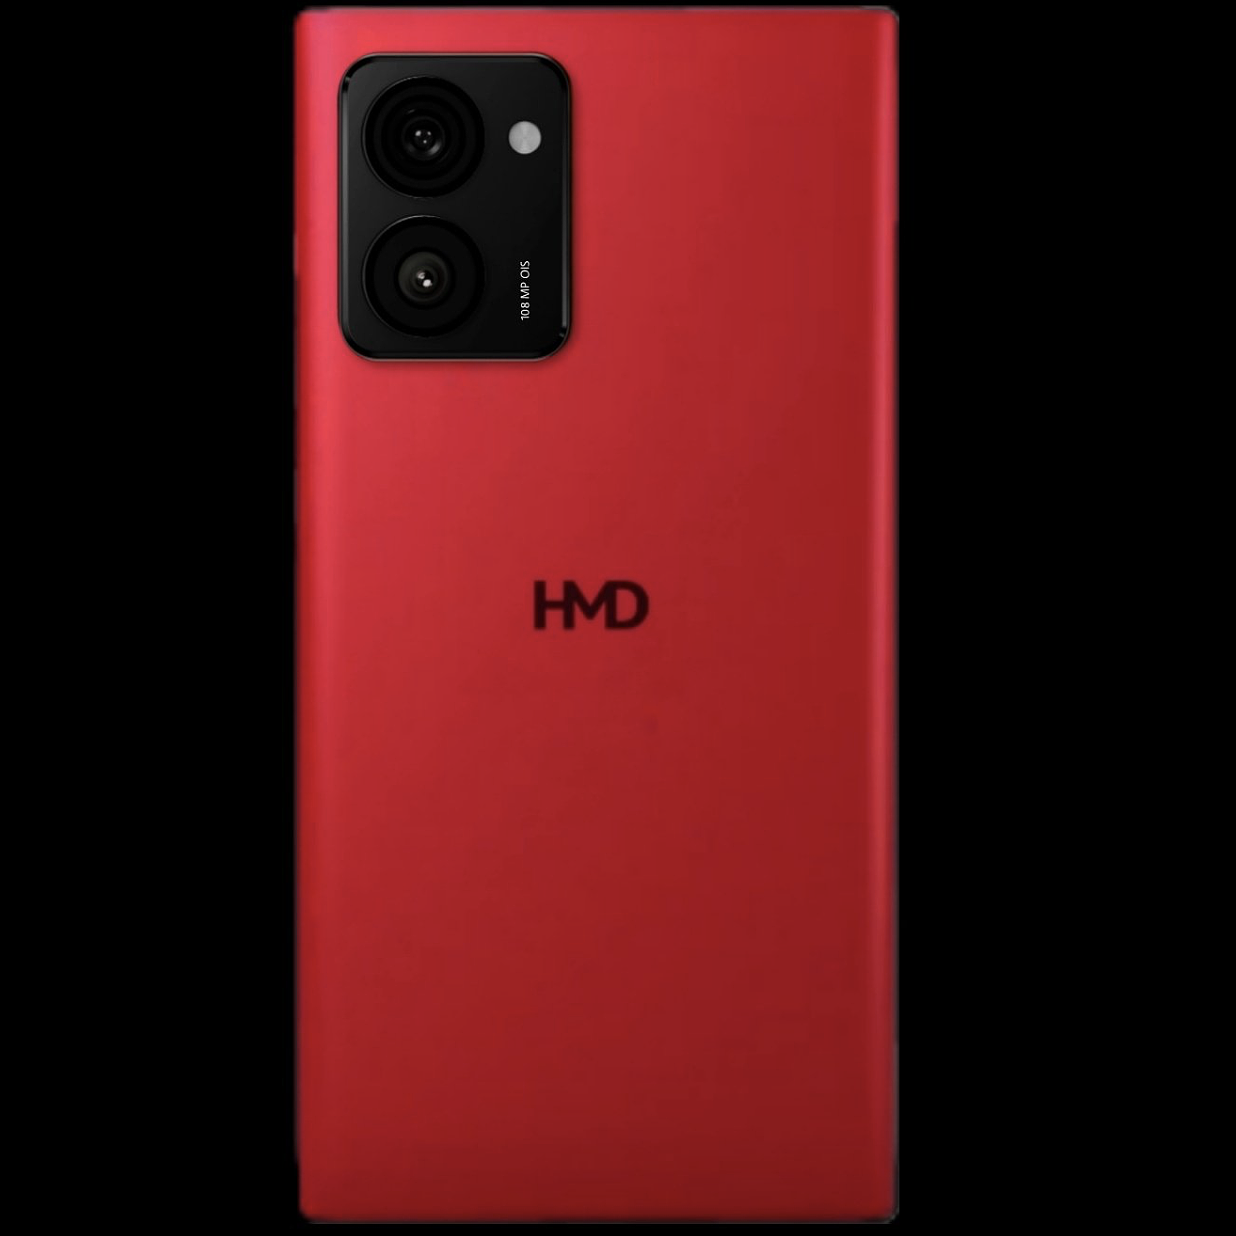 含 Lumia“复刻手机”/Fusion 模块化机型，HMD 多款新机售价 / 更多渲染图曝光 - 2